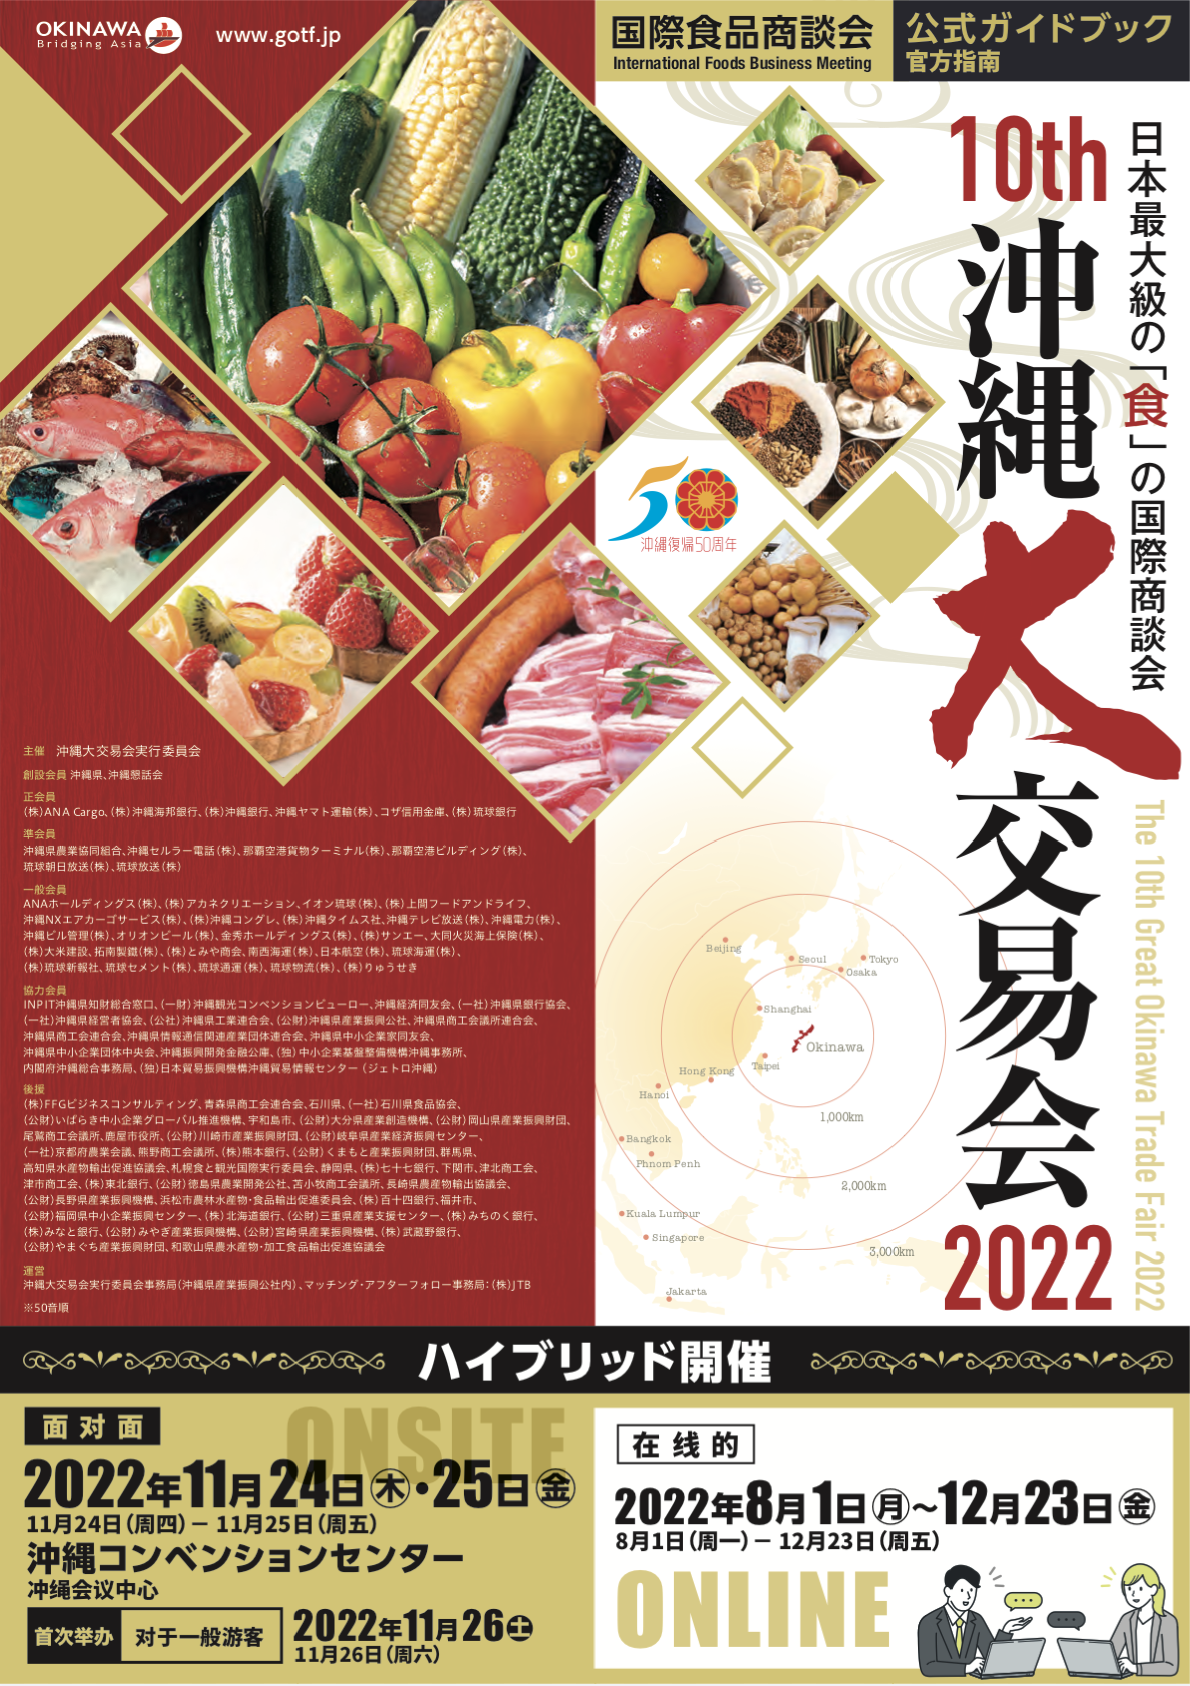 冲绳大交易会 2022 官方指南